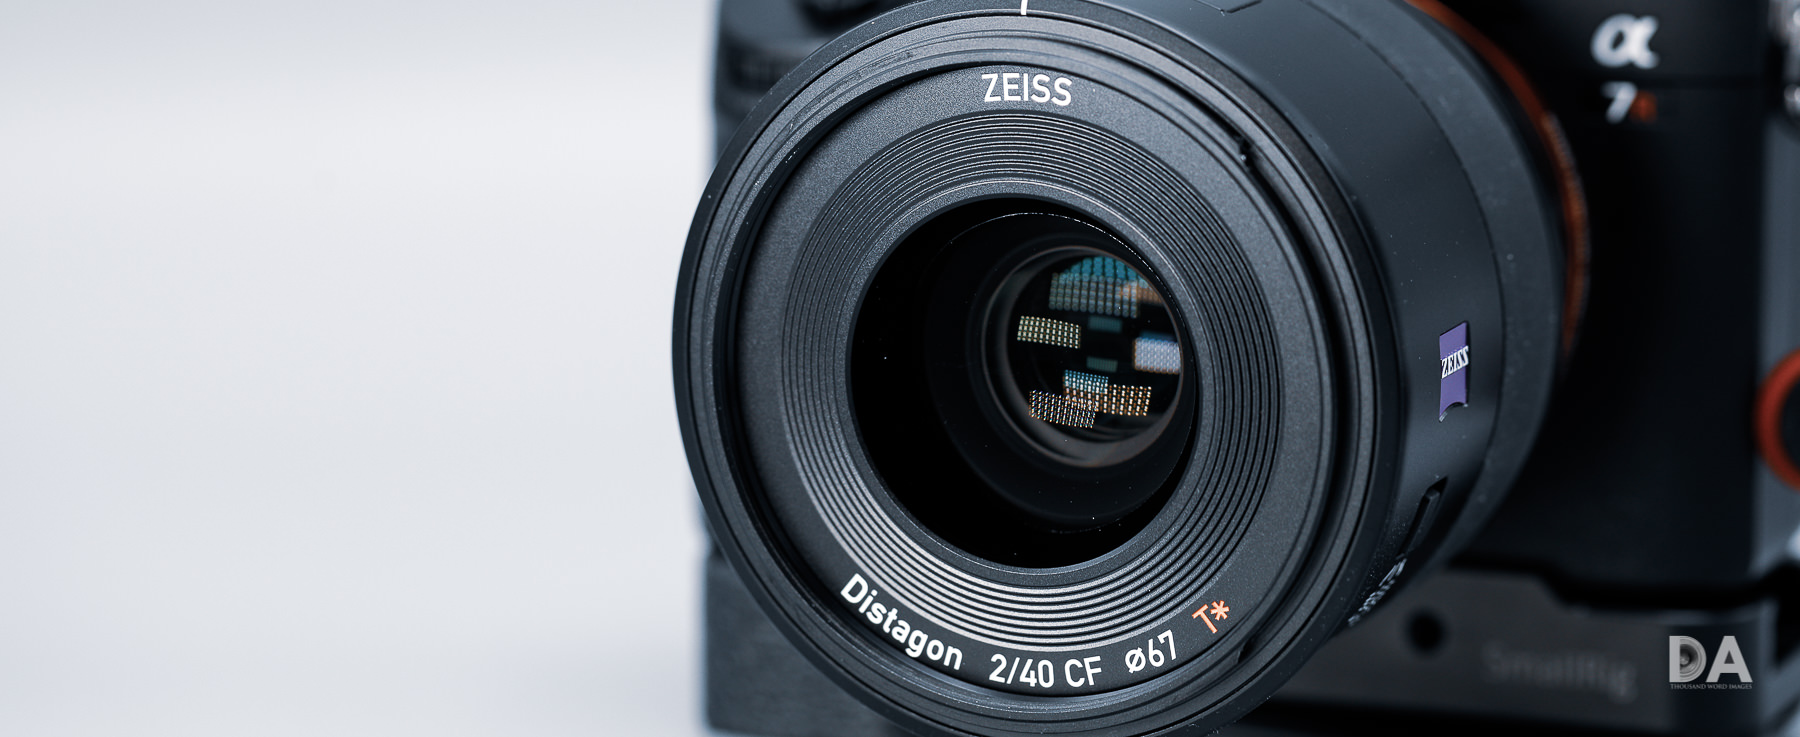 Zeiss Batis 40mm F2 CF Review - DustinAbbott.net